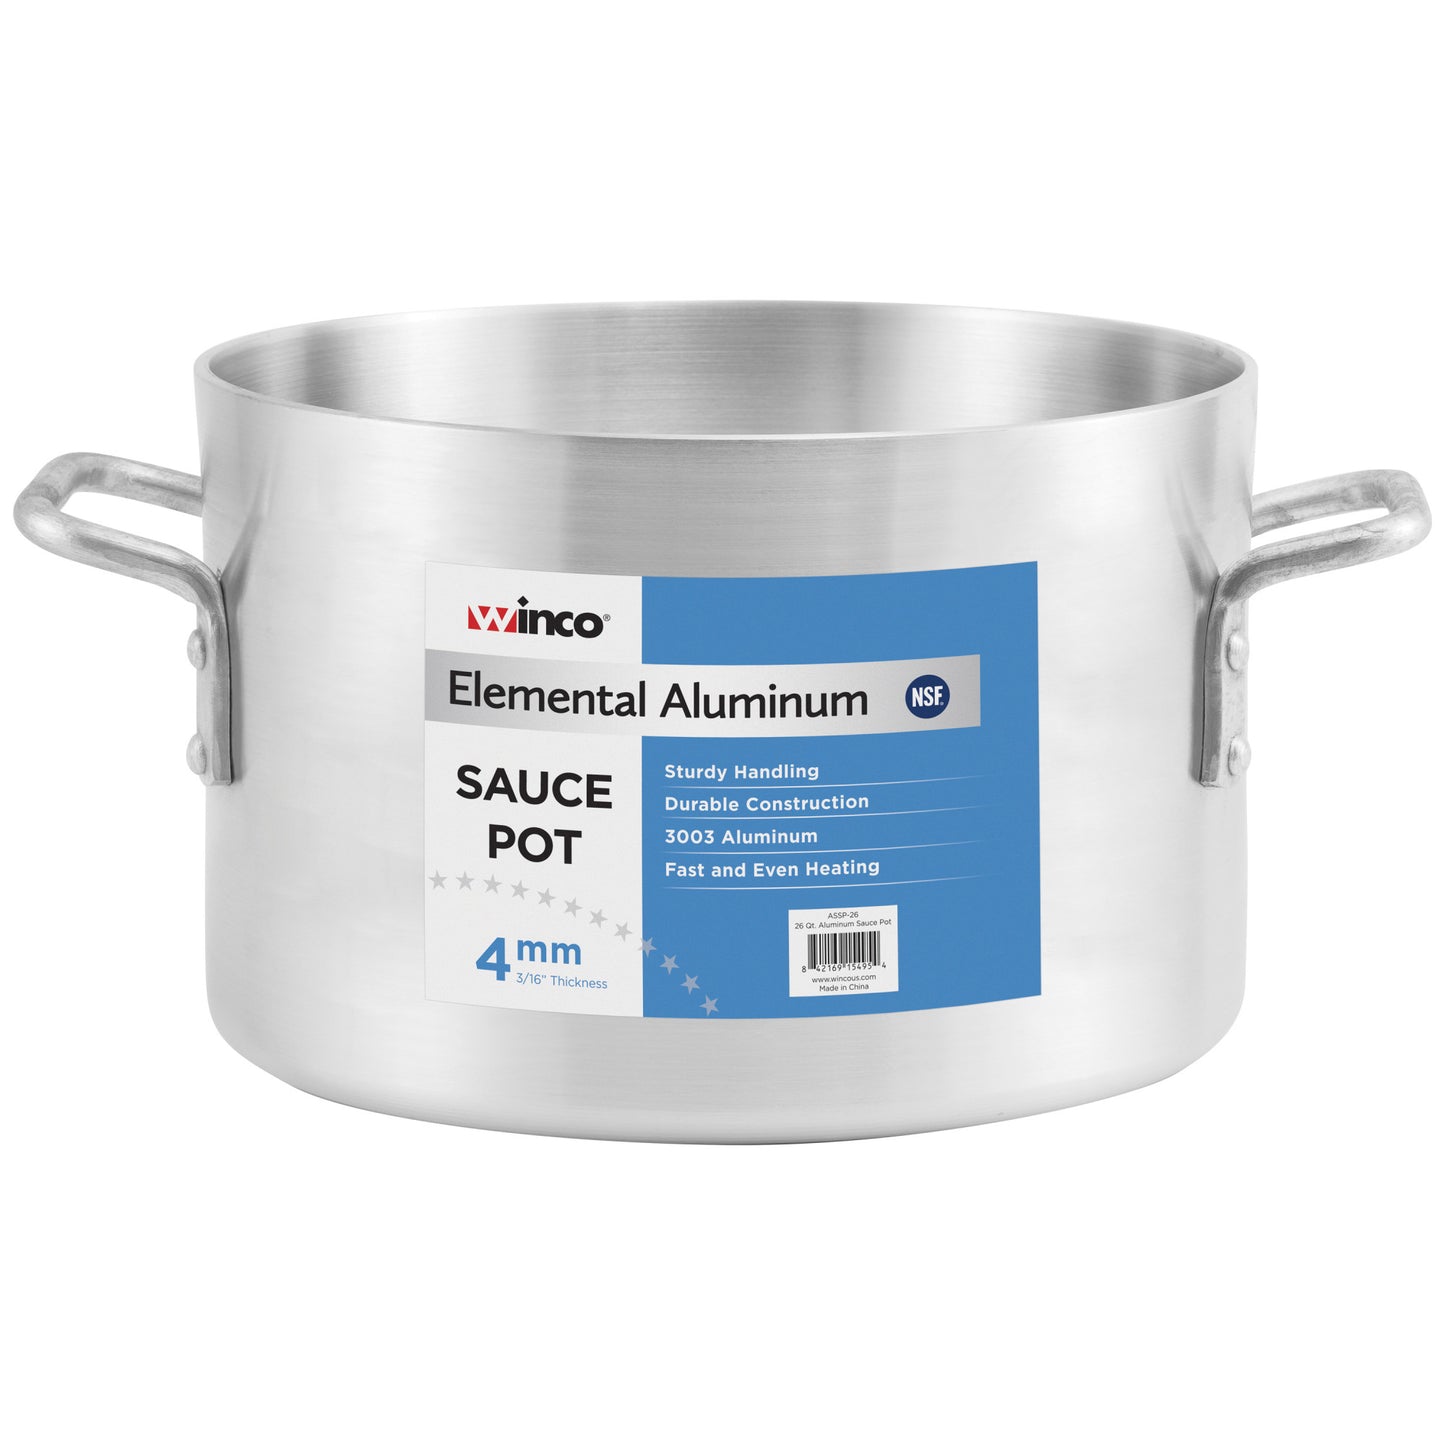 ASSP-40 - Elemental Aluminum Sauce Pot, 4mm - 40 Quart